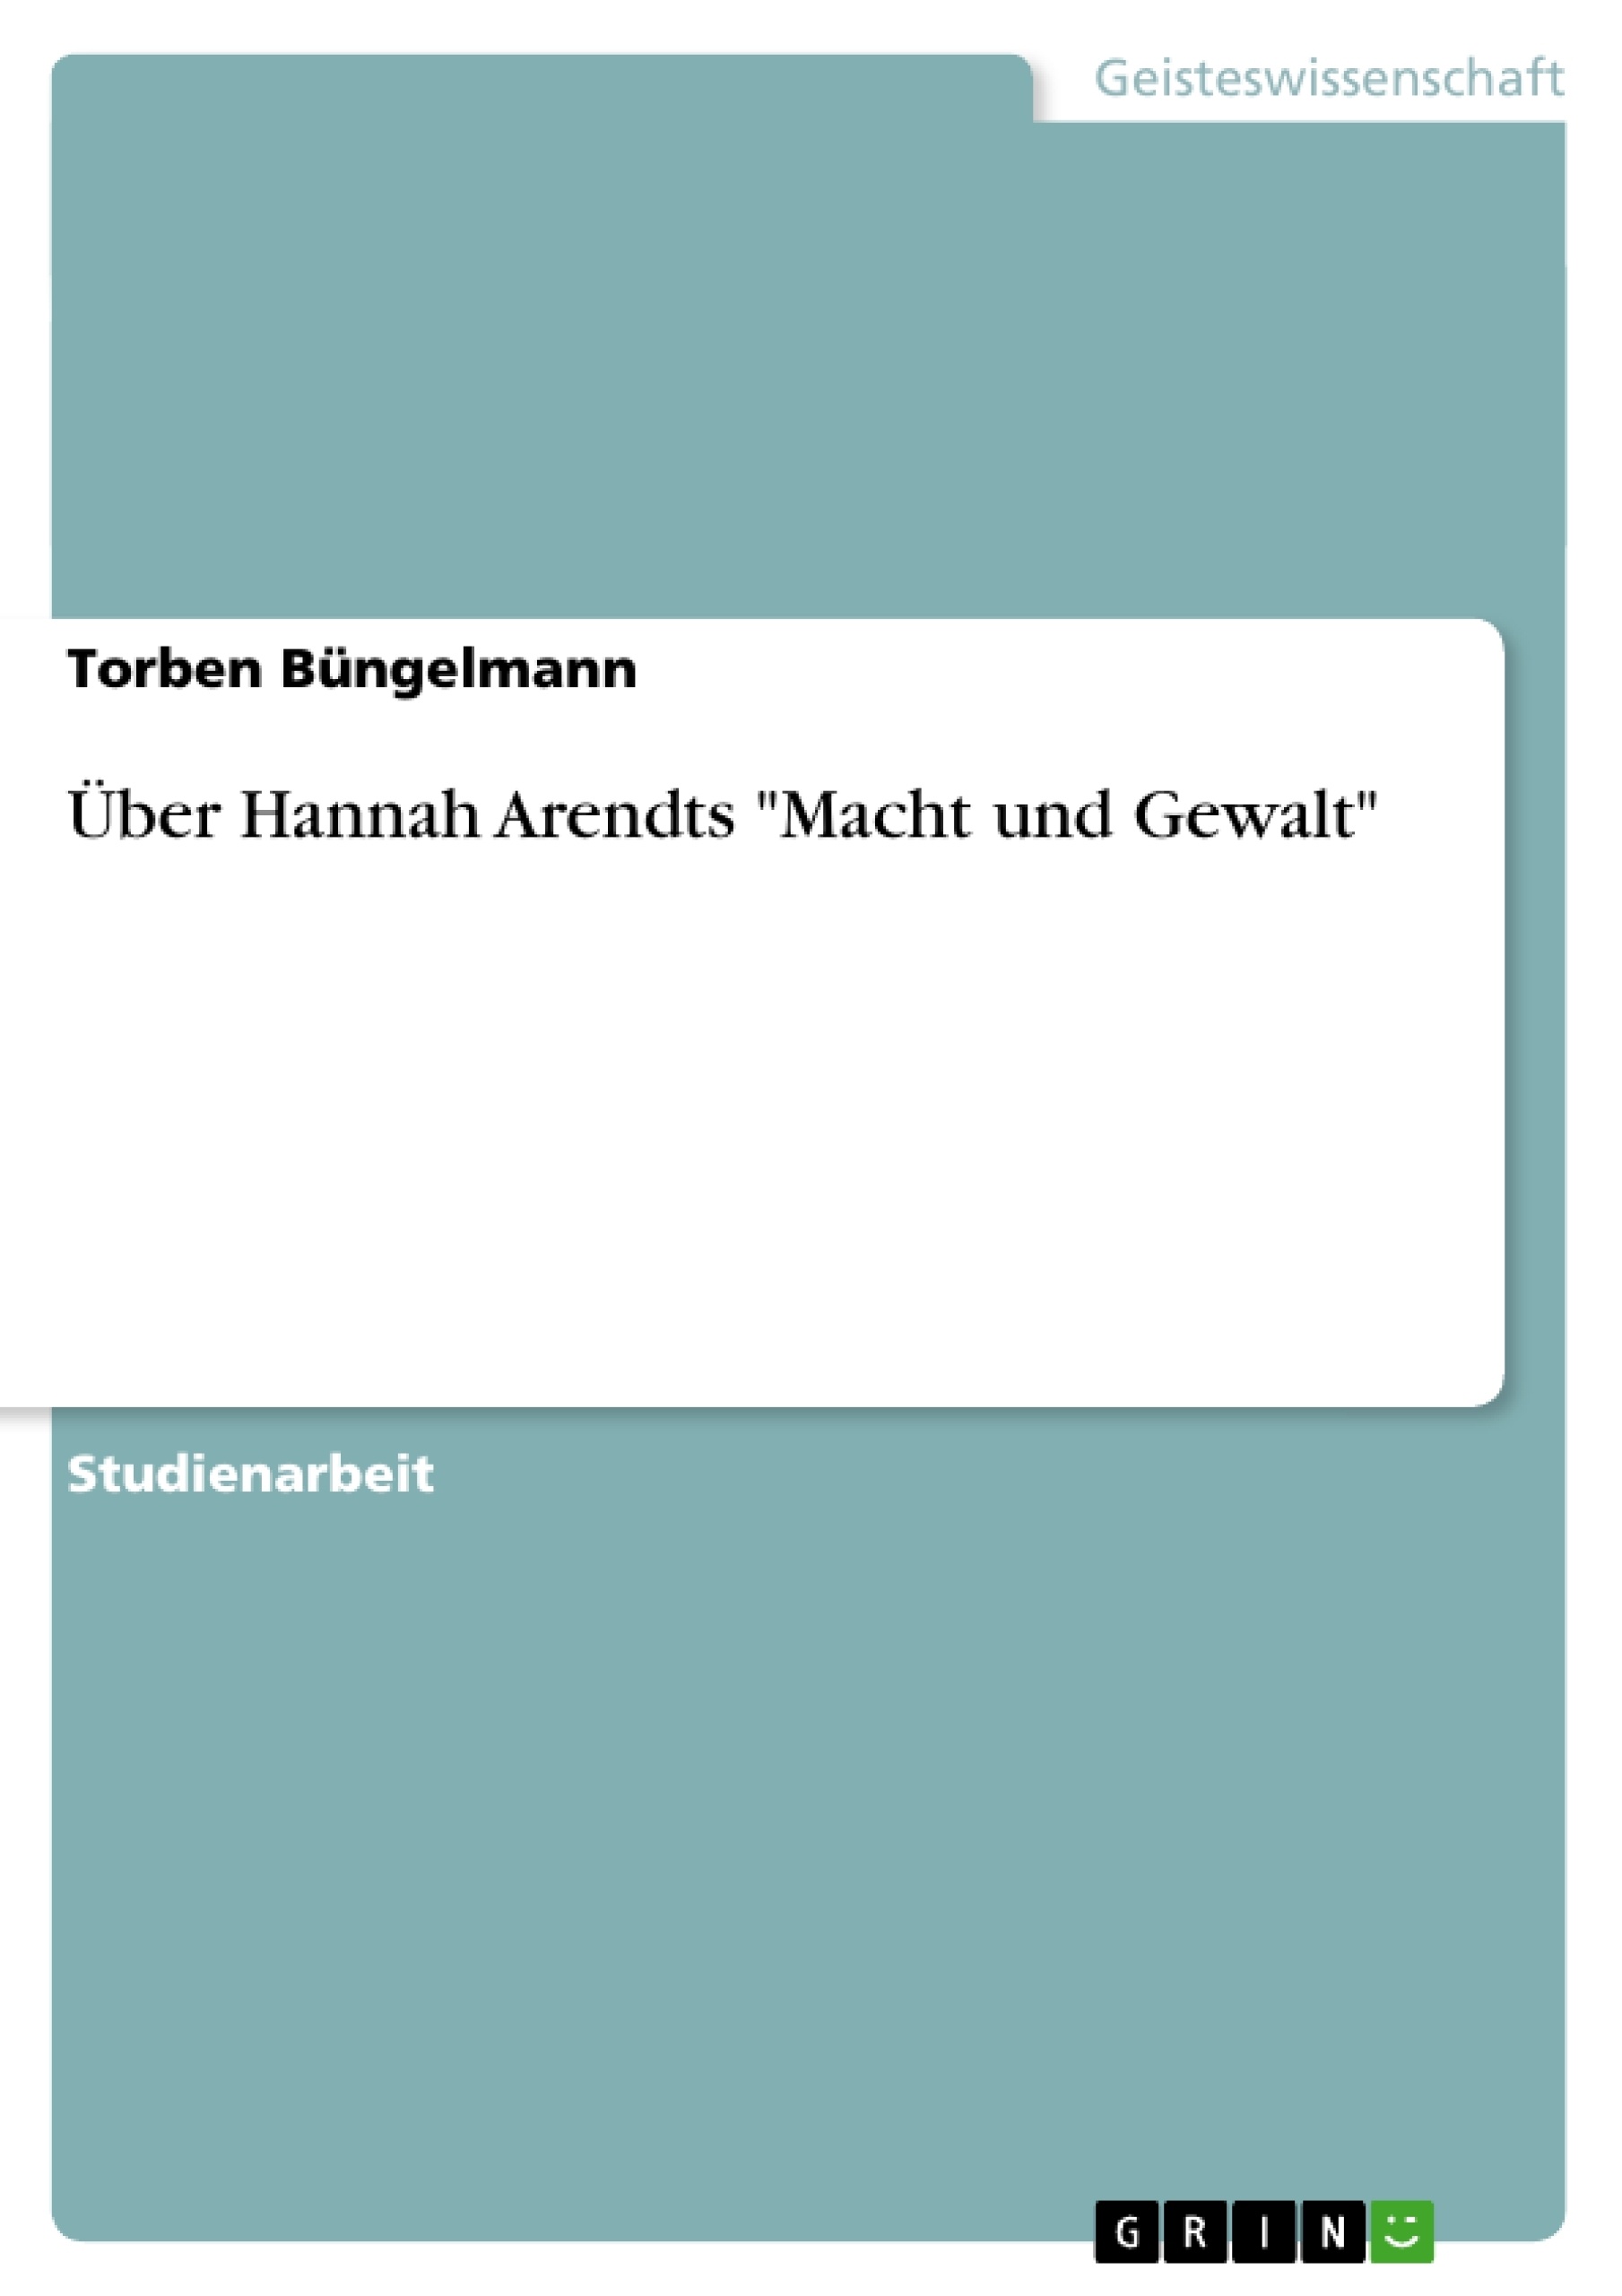 Título: Über Hannah Arendts "Macht und Gewalt"